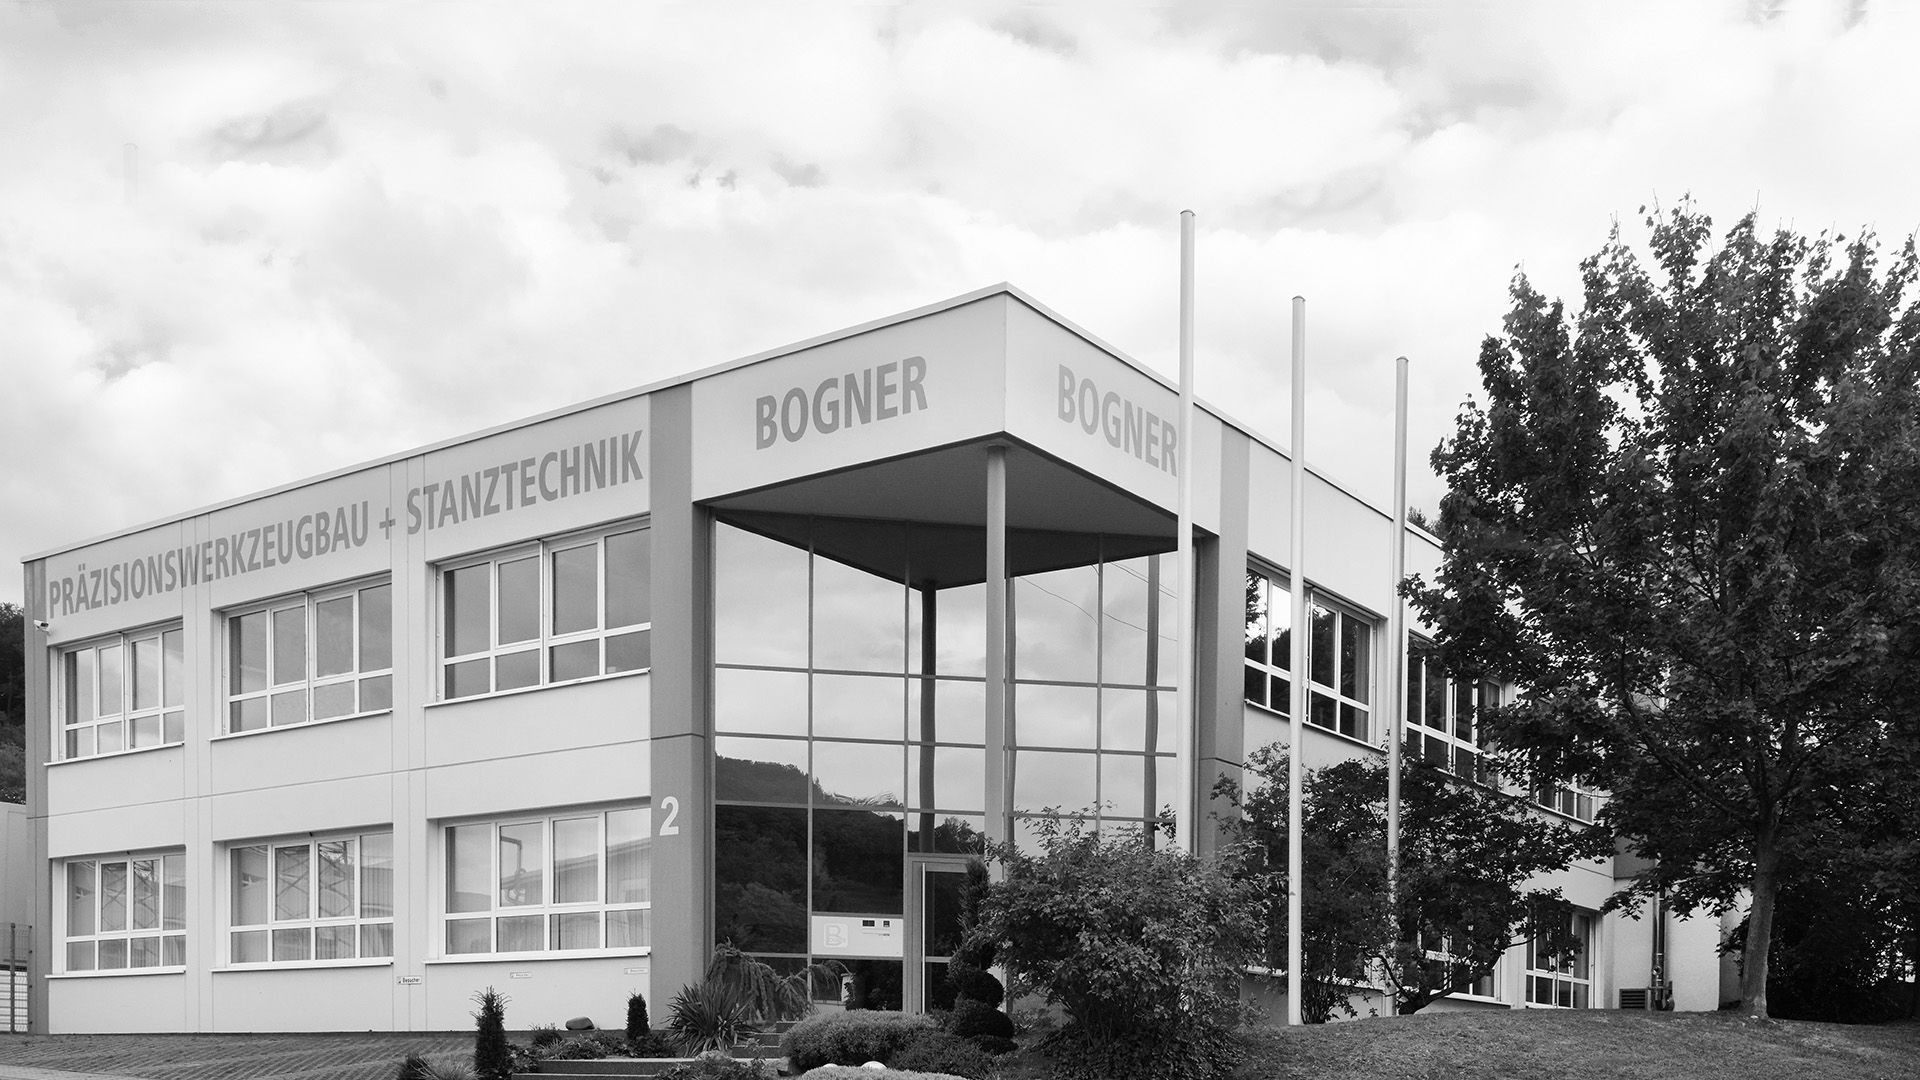 Bogner GmbH & Co. KG Building